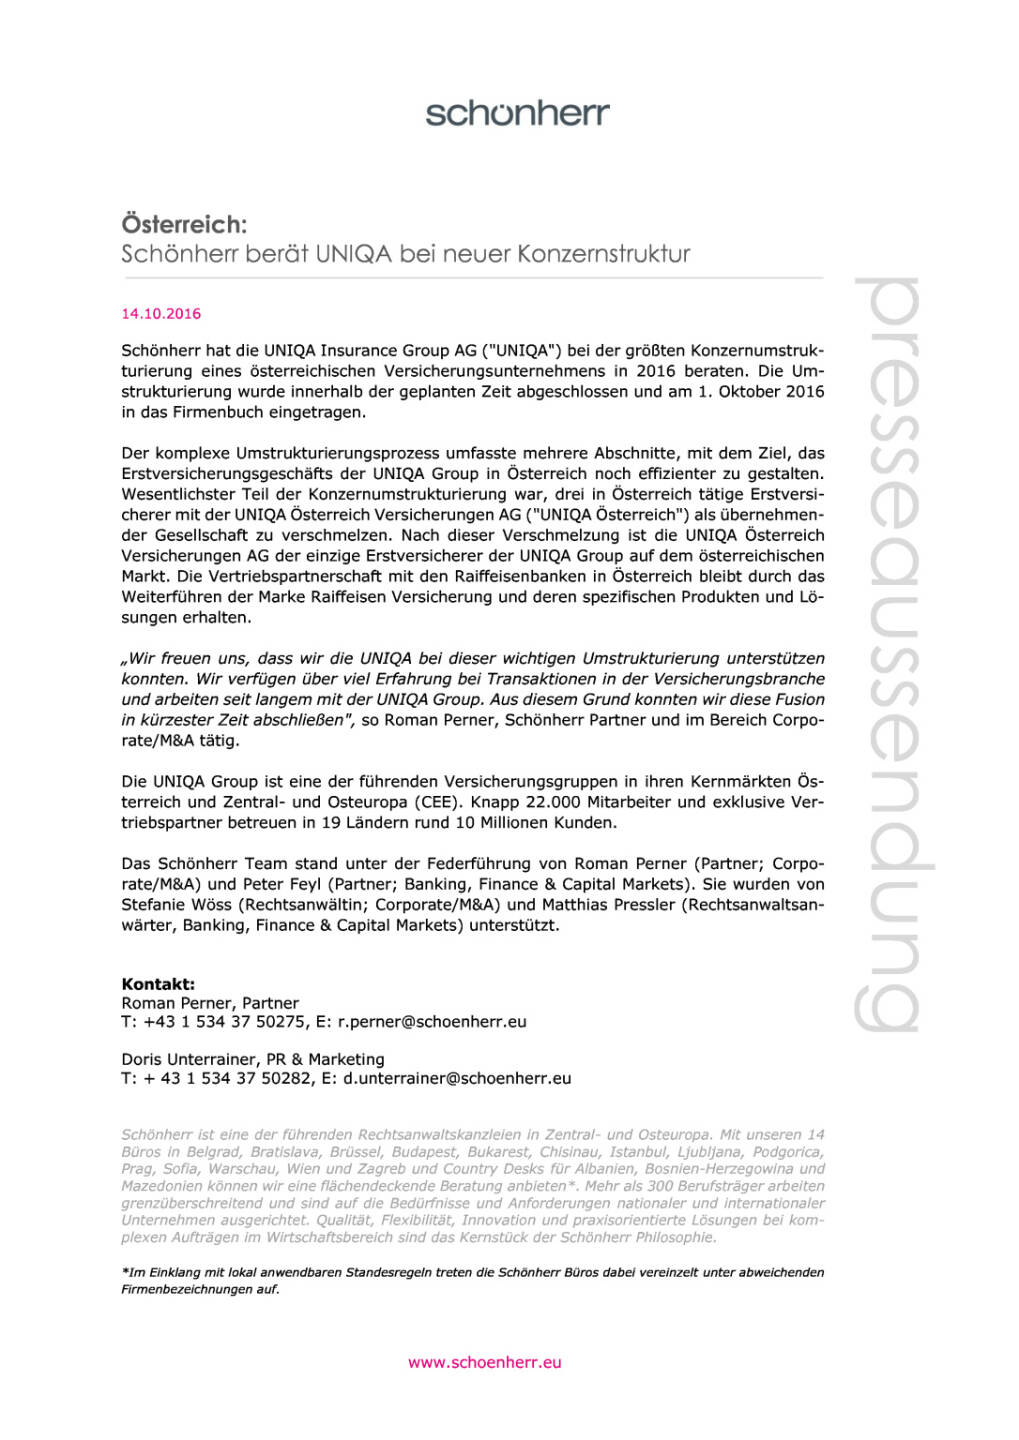 Schönherr berät Uniqa bei neuer Konzernstruktur, Seite 1/1, komplettes Dokument unter http://boerse-social.com/static/uploads/file_1904_schonherr_berat_uniqa_bei_neuer_konzernstruktur.pdf